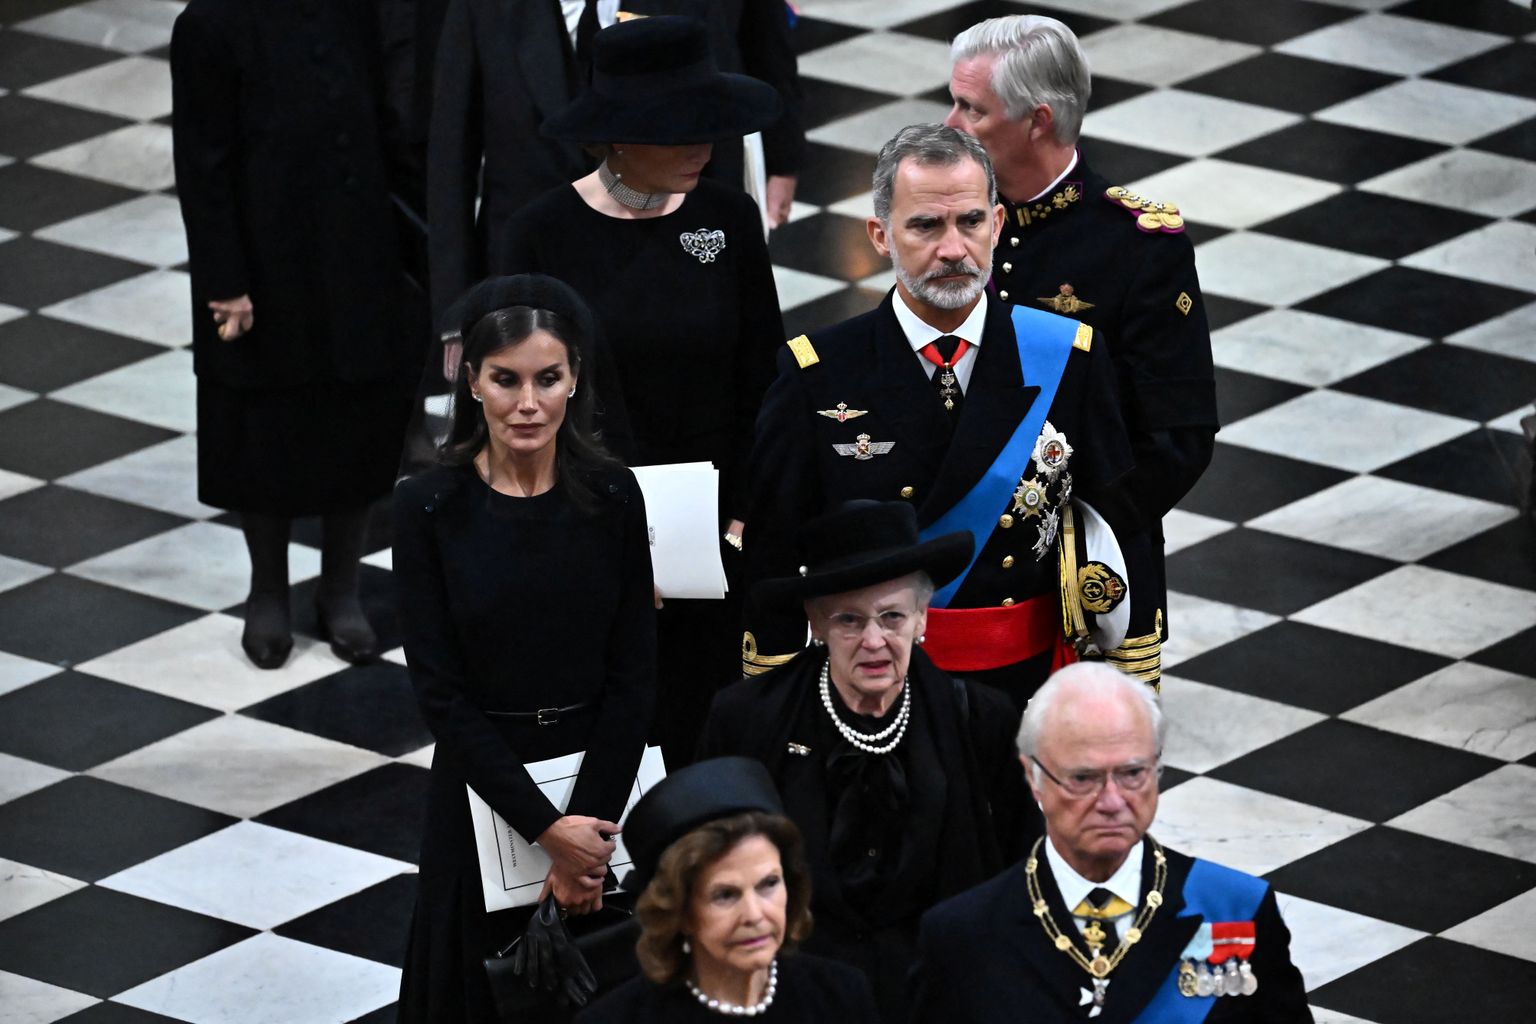 Taani kuninganna Margrethe II (keskel) saabub üleeile teistest Euroopa kuningaperedest ümbritsetuna Westminster Abbey kirikusse Briti monarhi Elizabeth II matustele. Päev hiljem andis ta positiivse koroonaviiruse proovi.